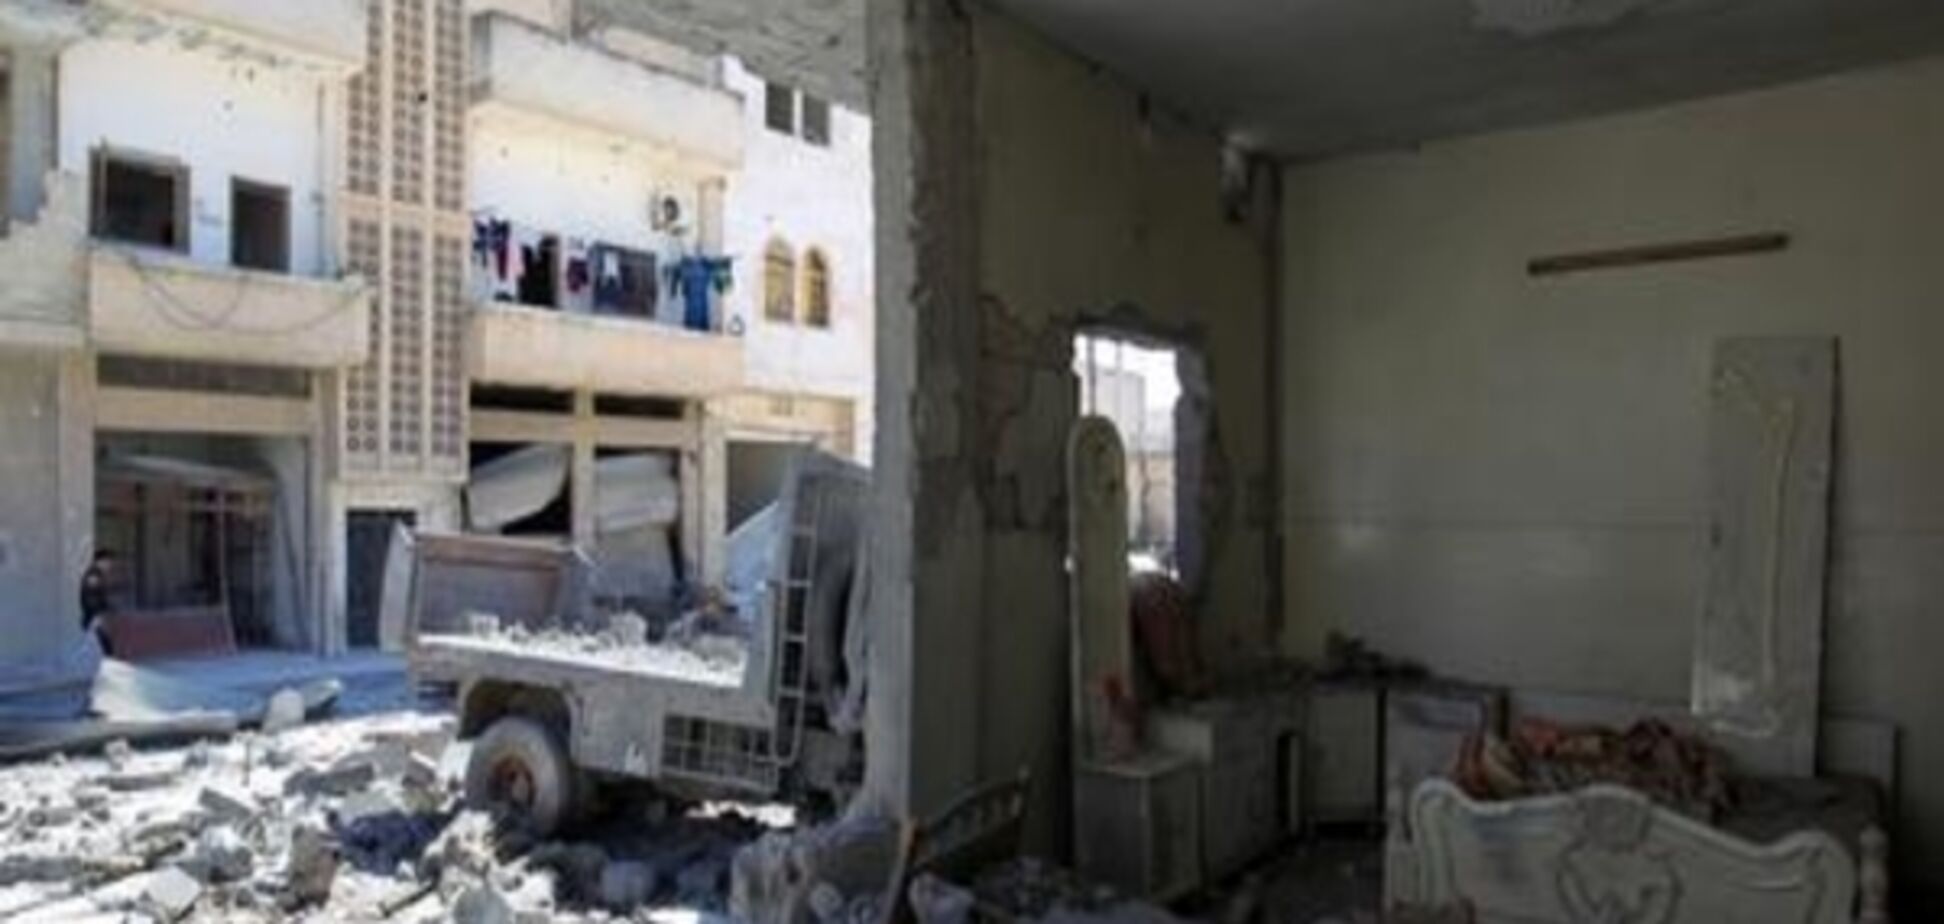 Постраждале від хімічної атаки сирійське місто знову обстріляли